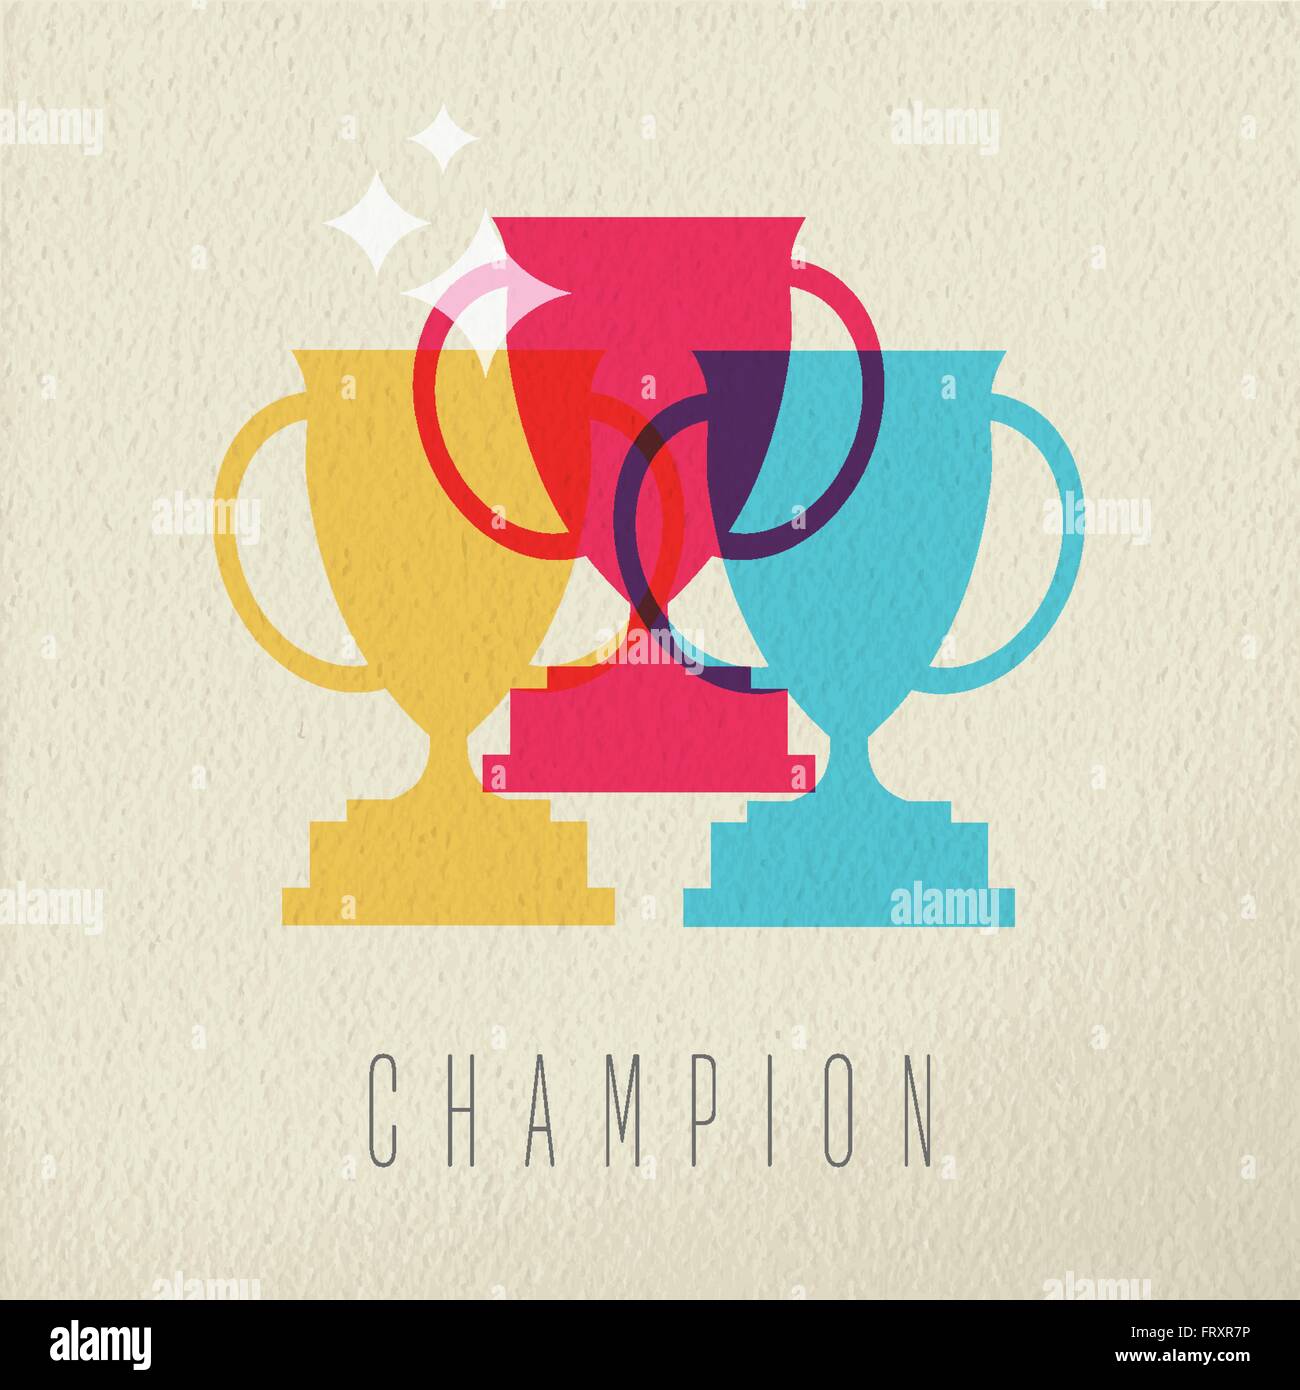 Champion-Symbol Konzept gewinnen den ersten Platz Trophy Award im Farbstil über Textur Hintergrund. EPS10 Vektor. Stock Vektor